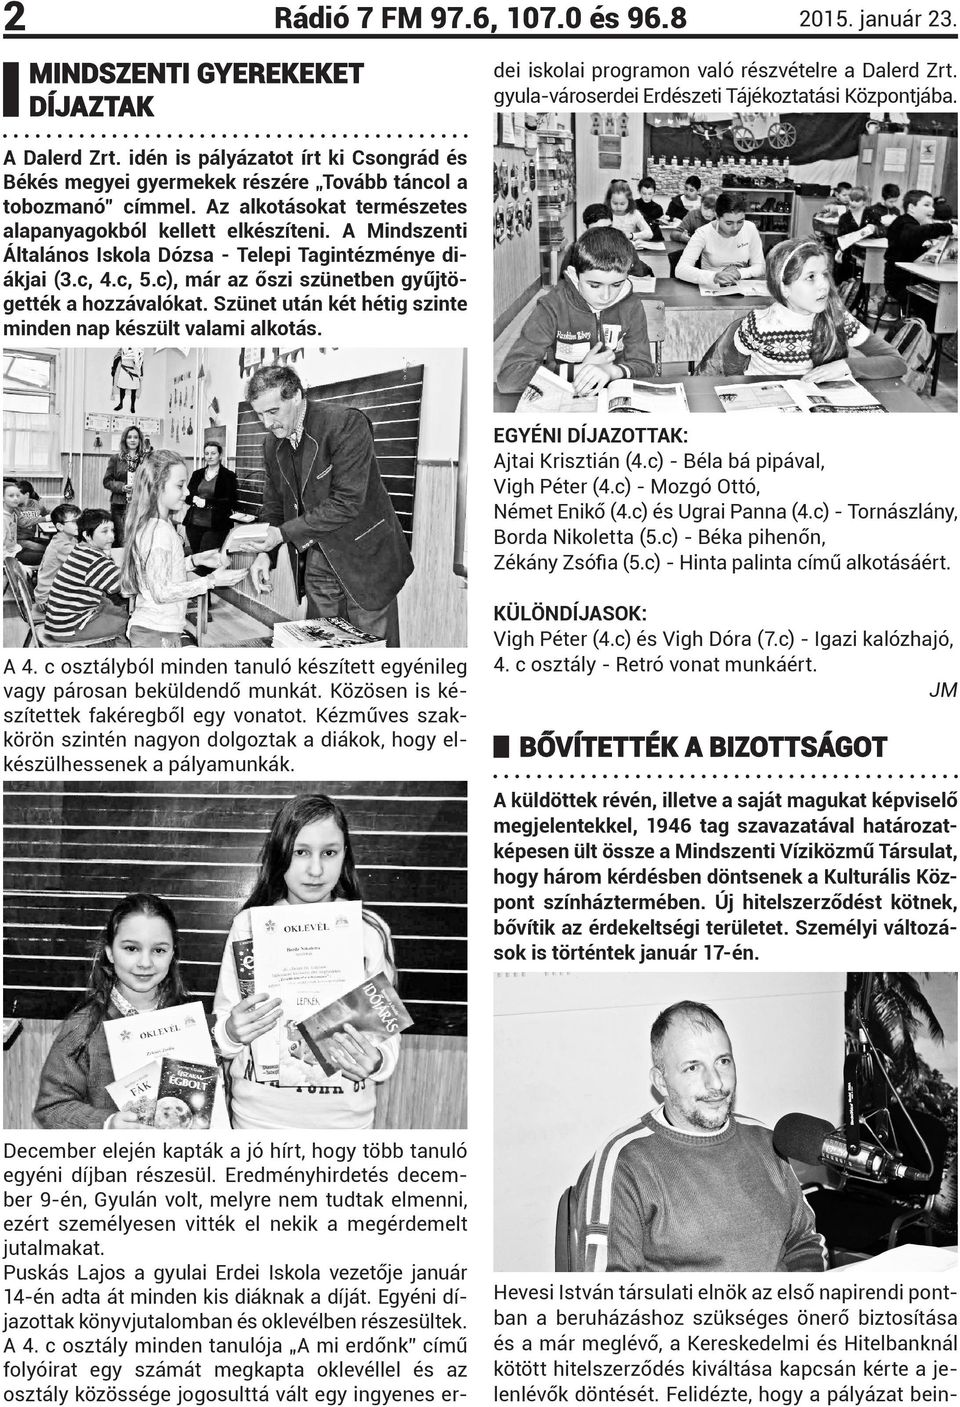 Puskás Lajos a gyulai Erdei Iskola vezetője január 14-én adta át minden kis diáknak a díját. Egyéni díjazottak könyvjutalomban és oklevélben részesültek. A 4.